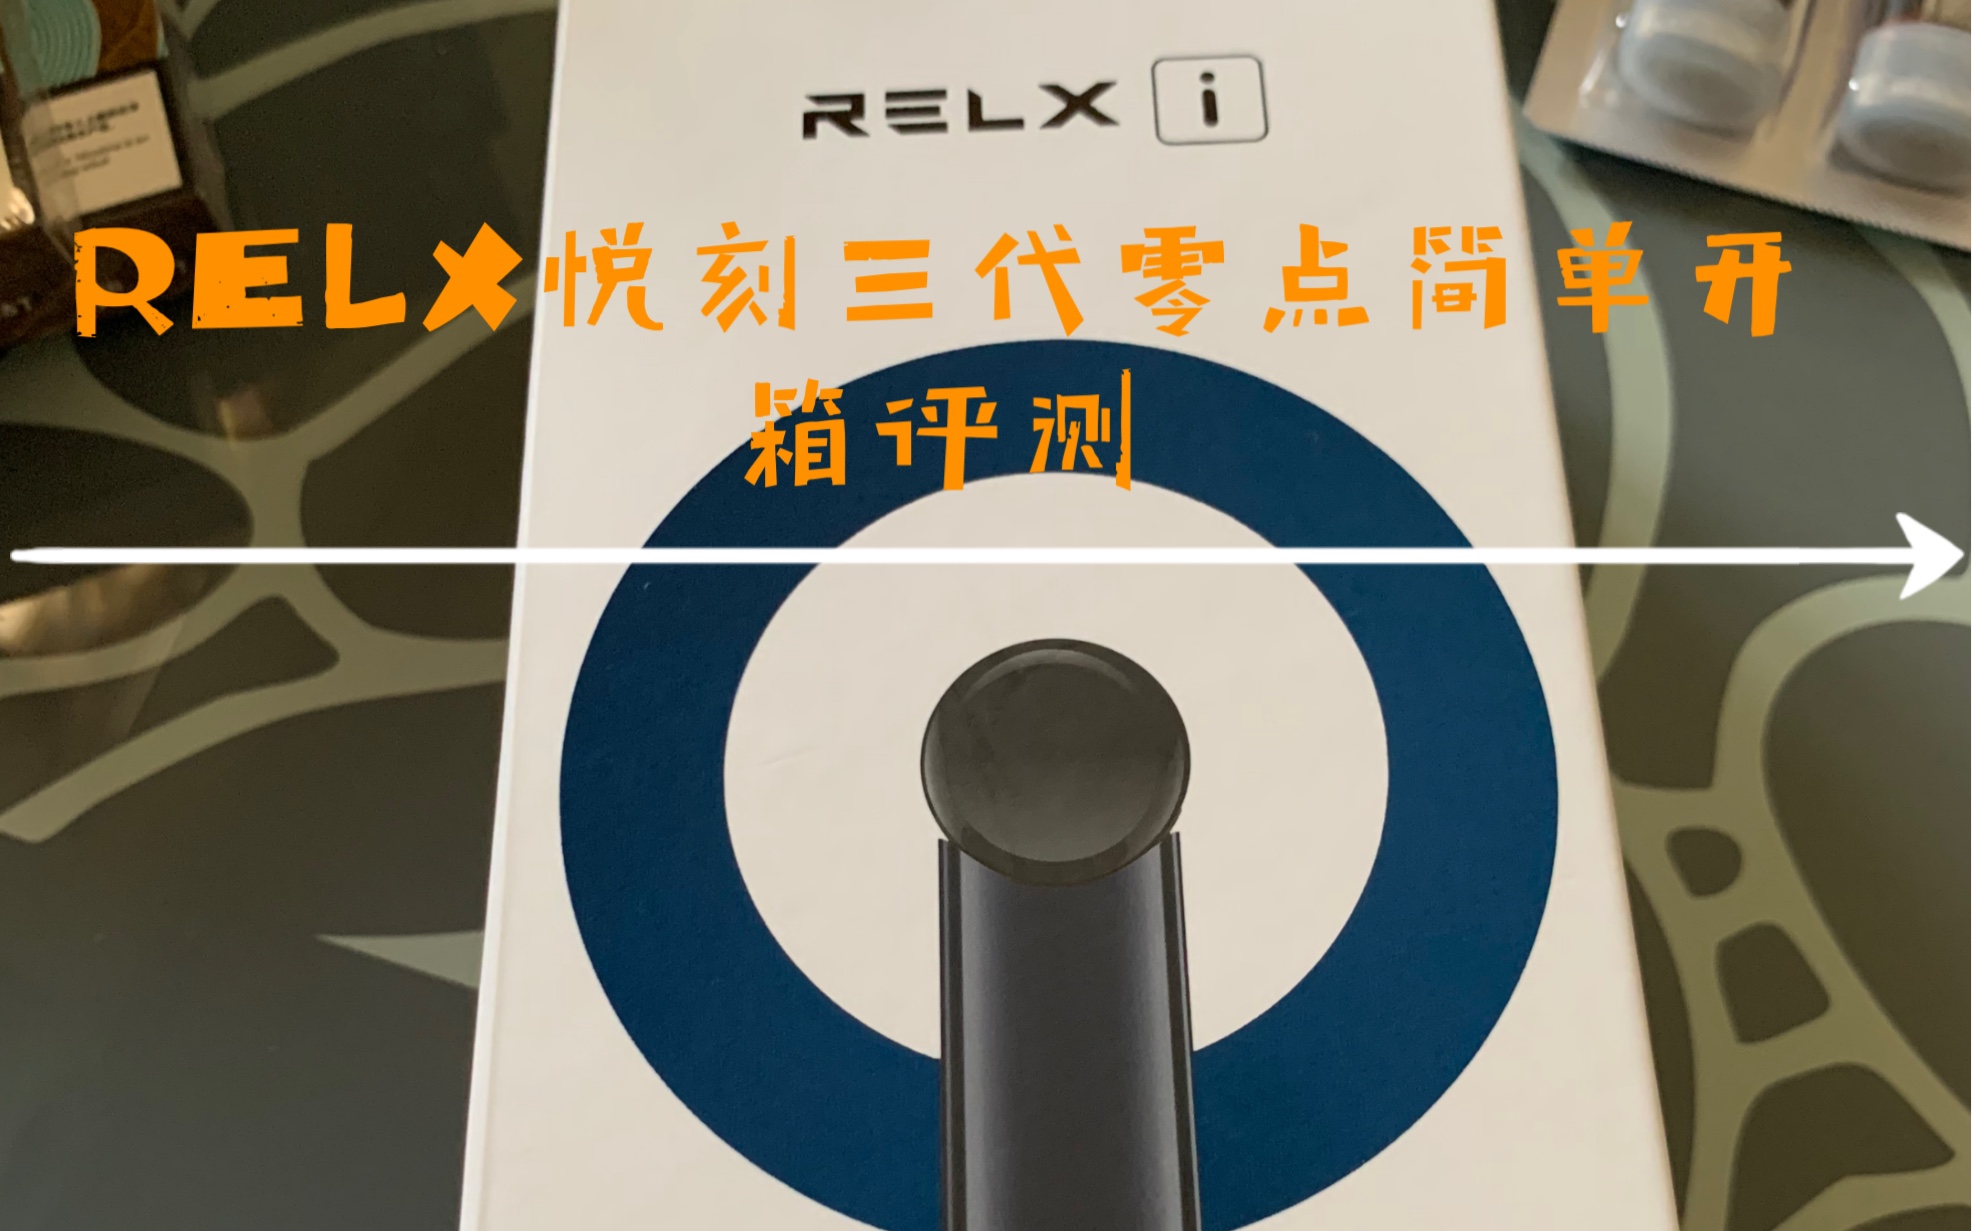 【悦刻relx电子烟】三代灵点超详细测评,酷炫app,功能全是干货!